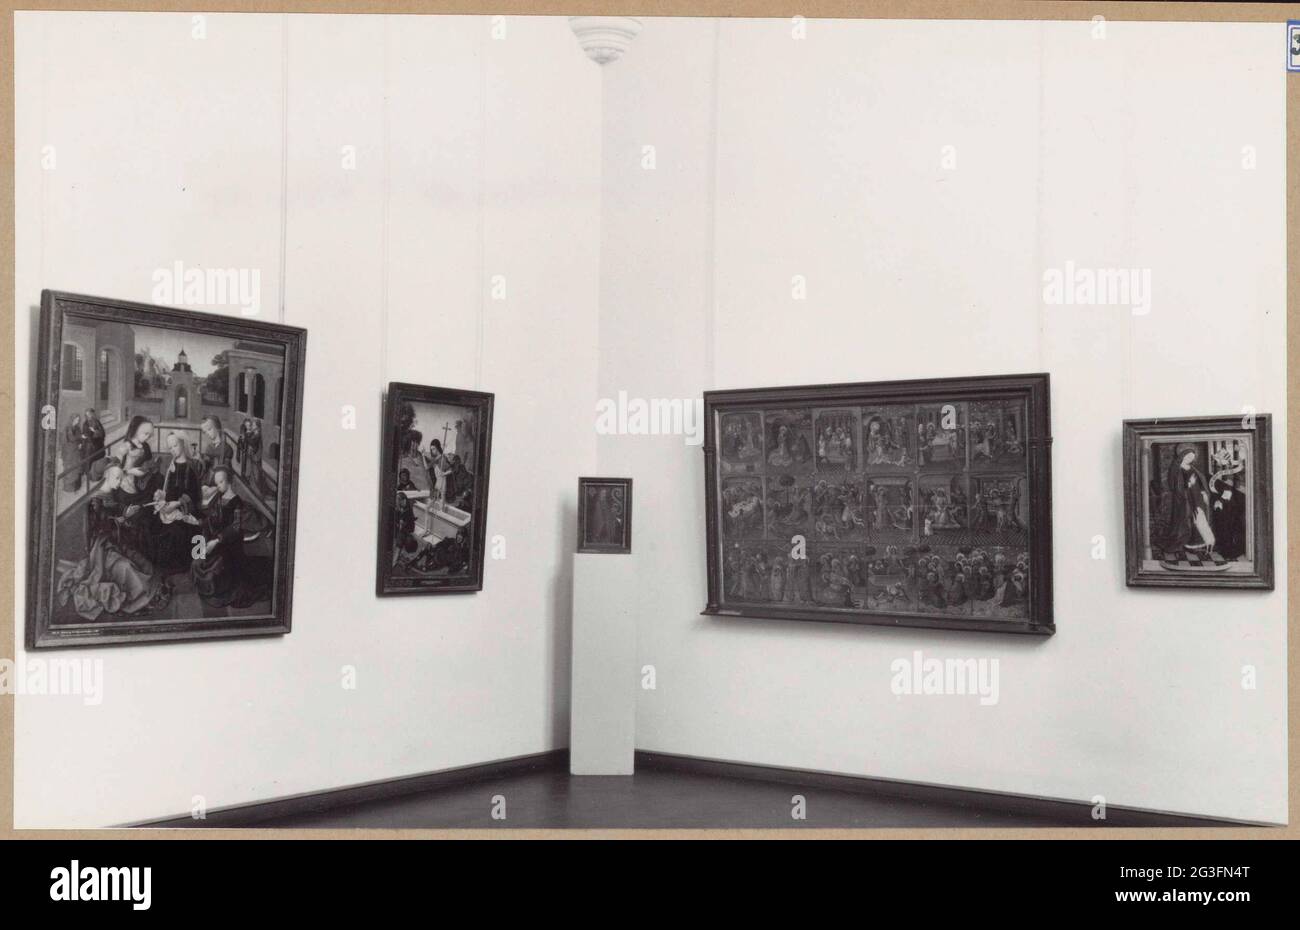 Ecke eines Raumes mit fünf Gemälden, von denen vier an der Wand und eines auf einer Basis; Einrichtung der östlichen Schränke im Jahr 1961. Raum mit einer Anordnung mittelalterlicher Gemälde, darunter der Meister der Jungfrau Inter Virgines. Stockfoto